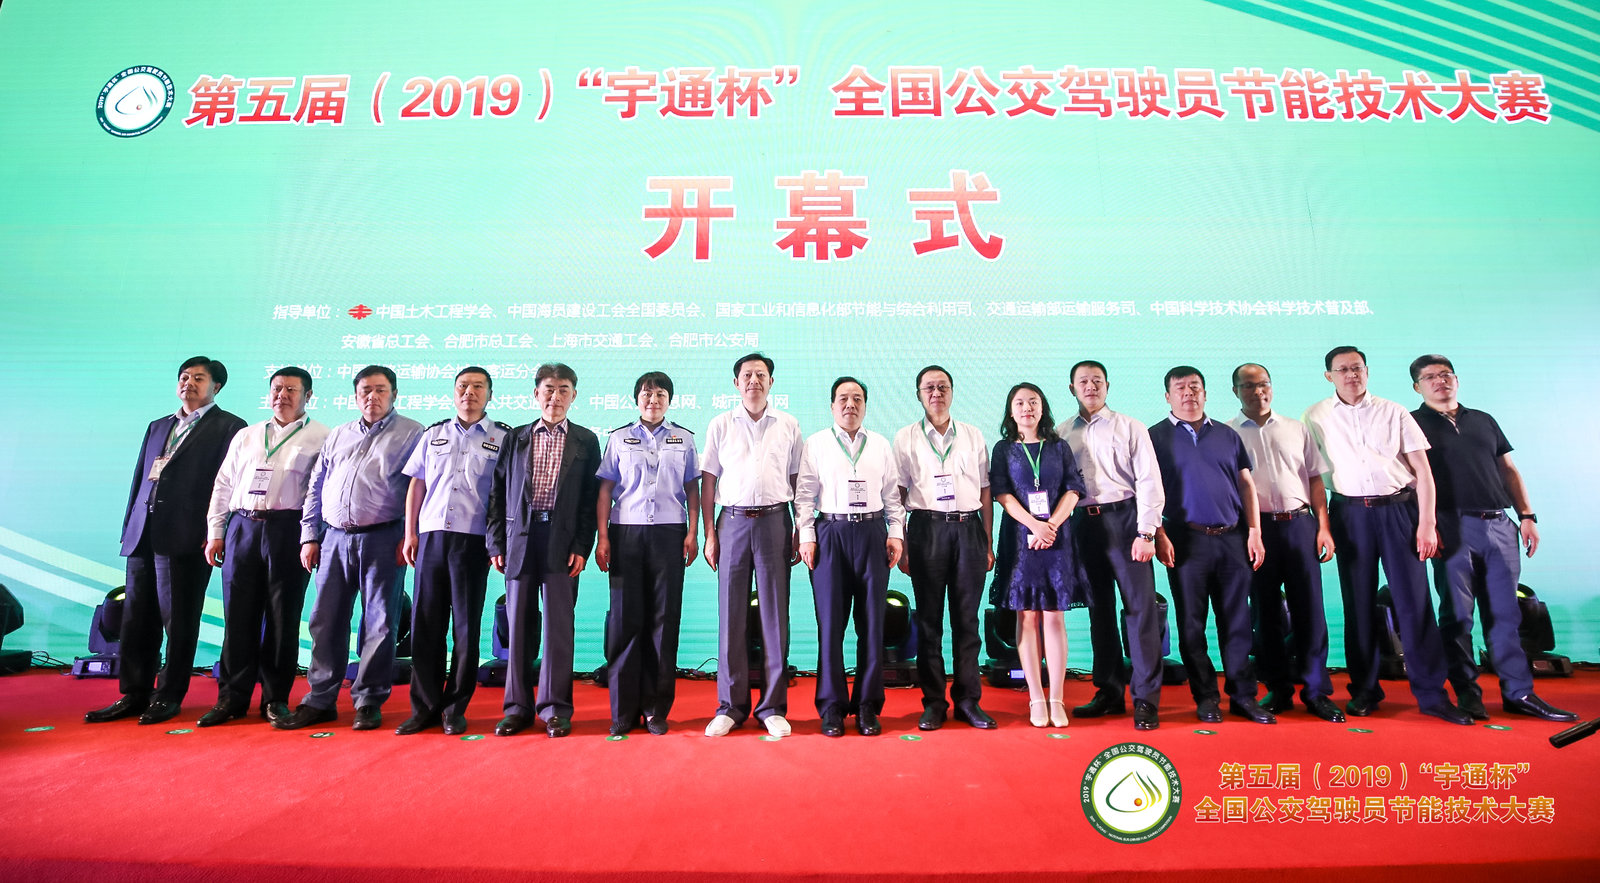 公交行业盛事——CIB EXPO 2019上海国际客车展览会将举办，参赛单位积极报名参加